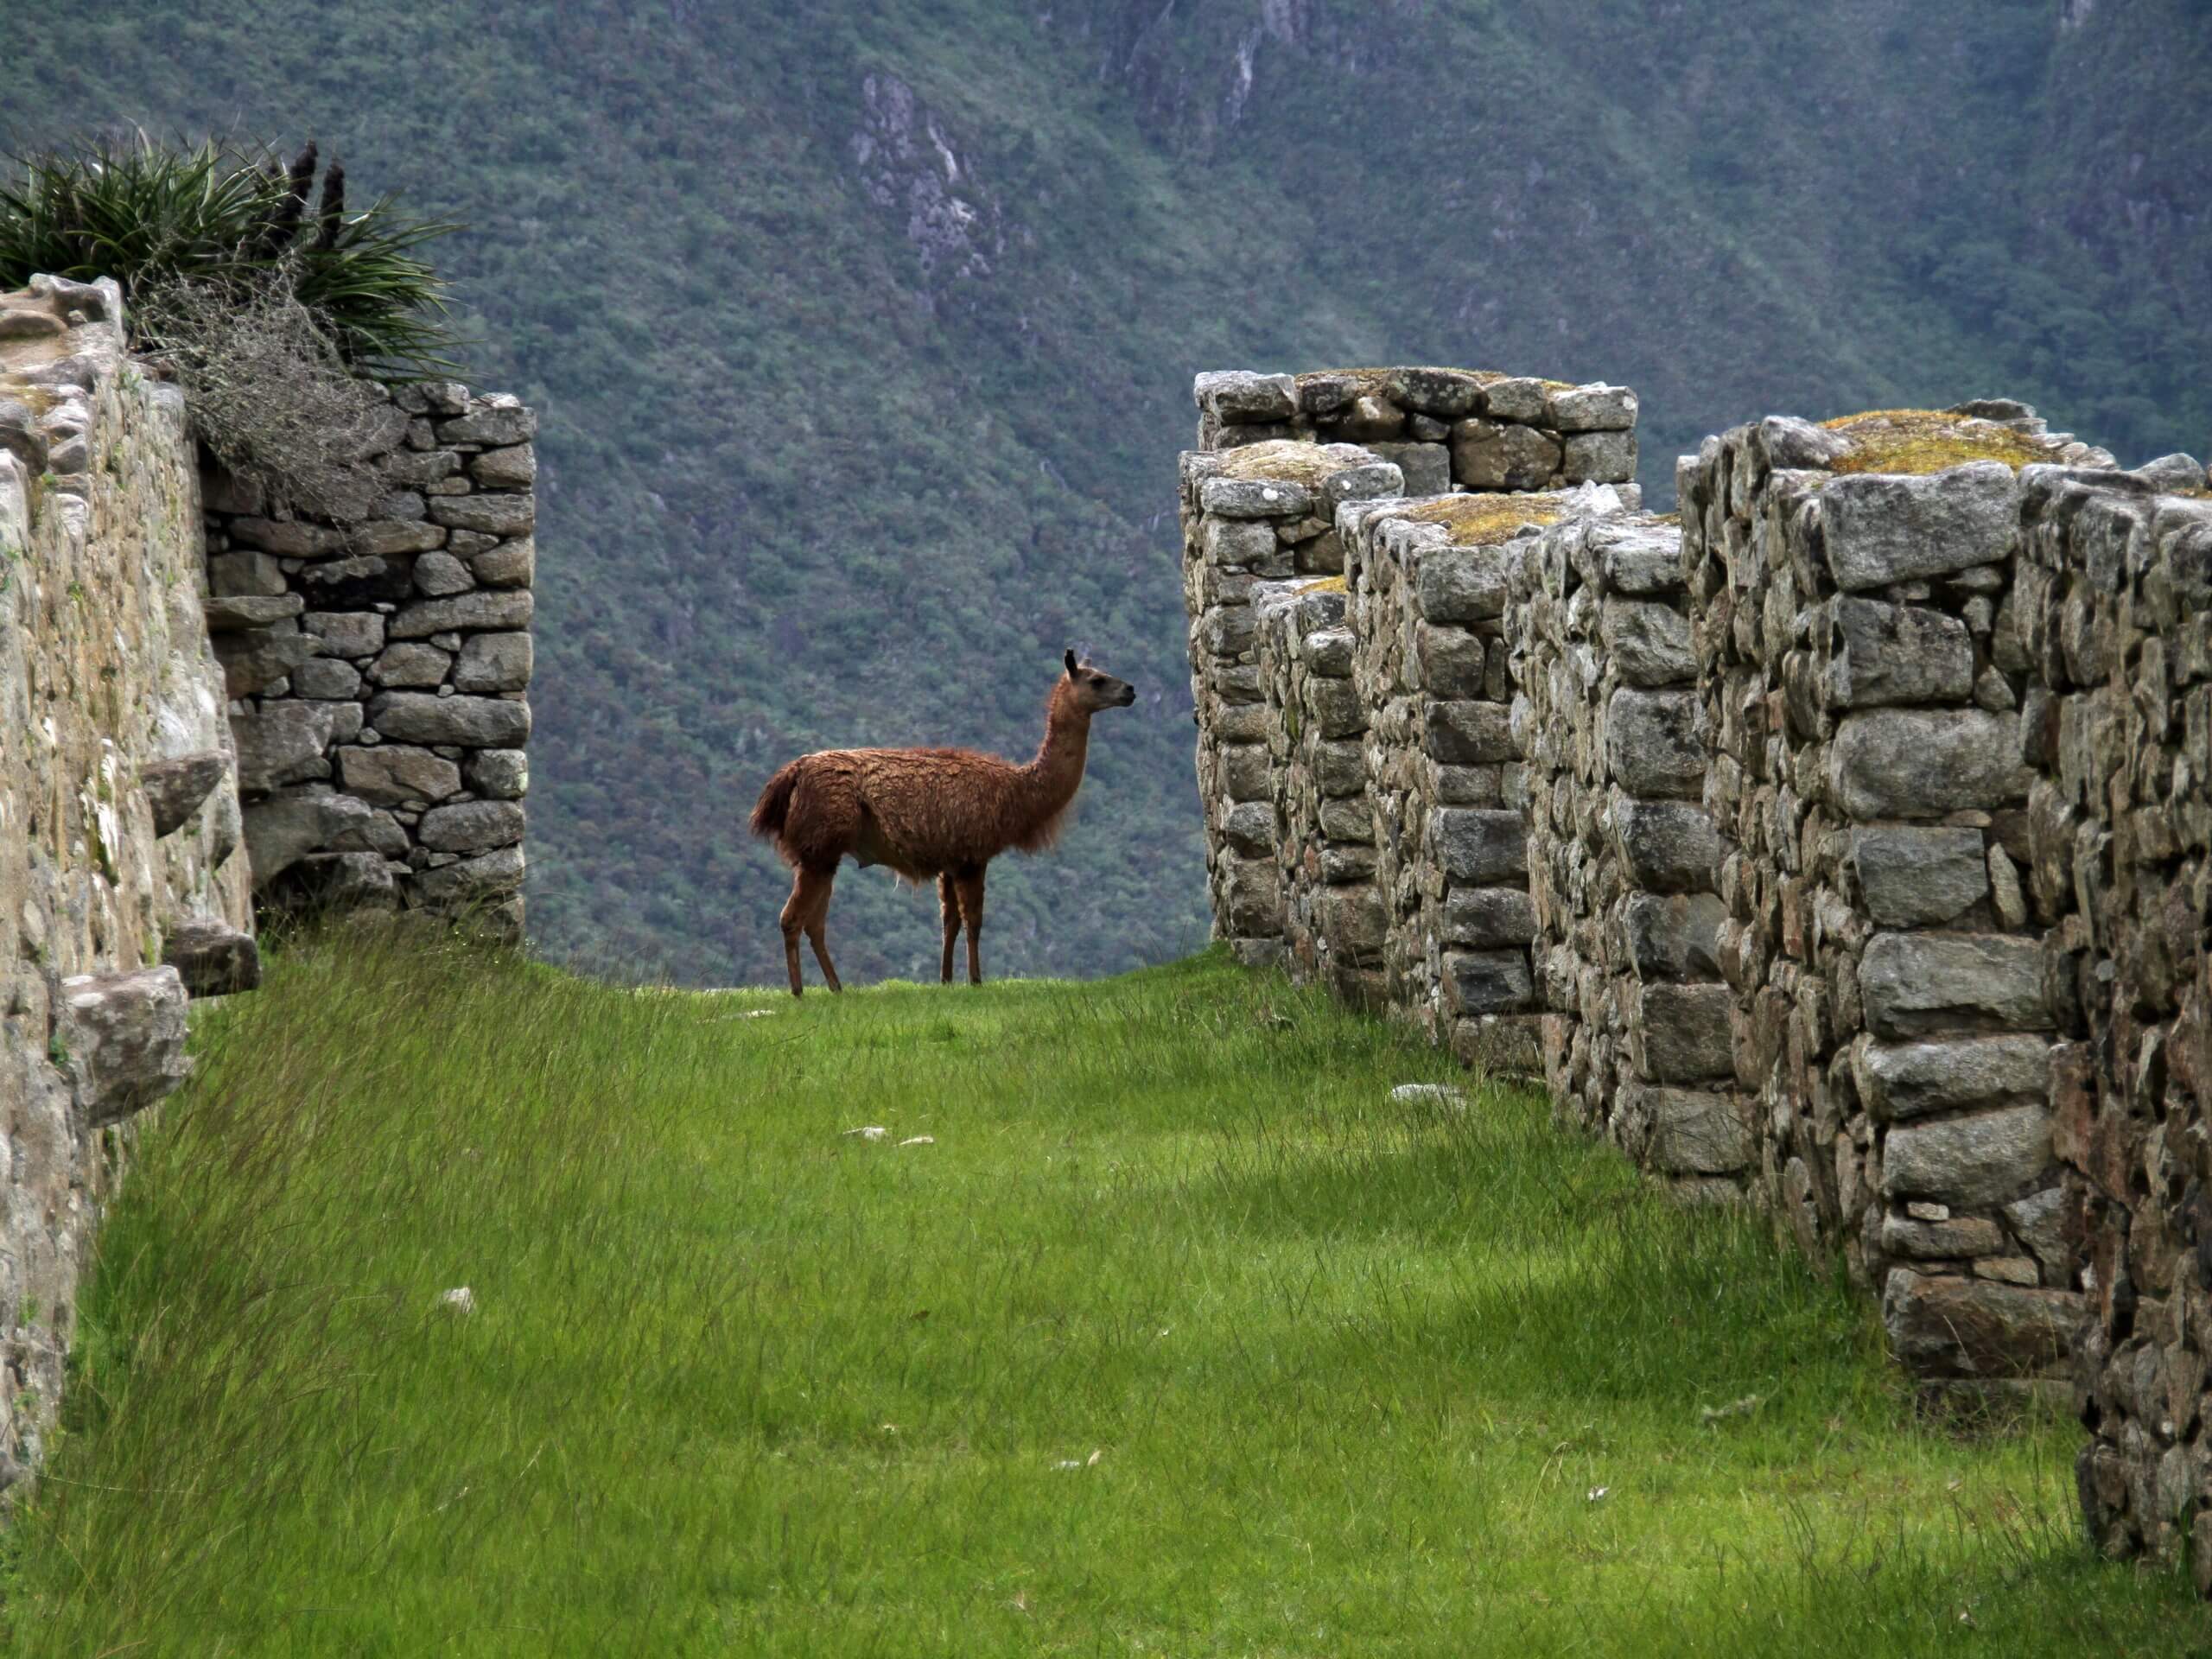 Llama seen on Machu Picchu complex in Peru